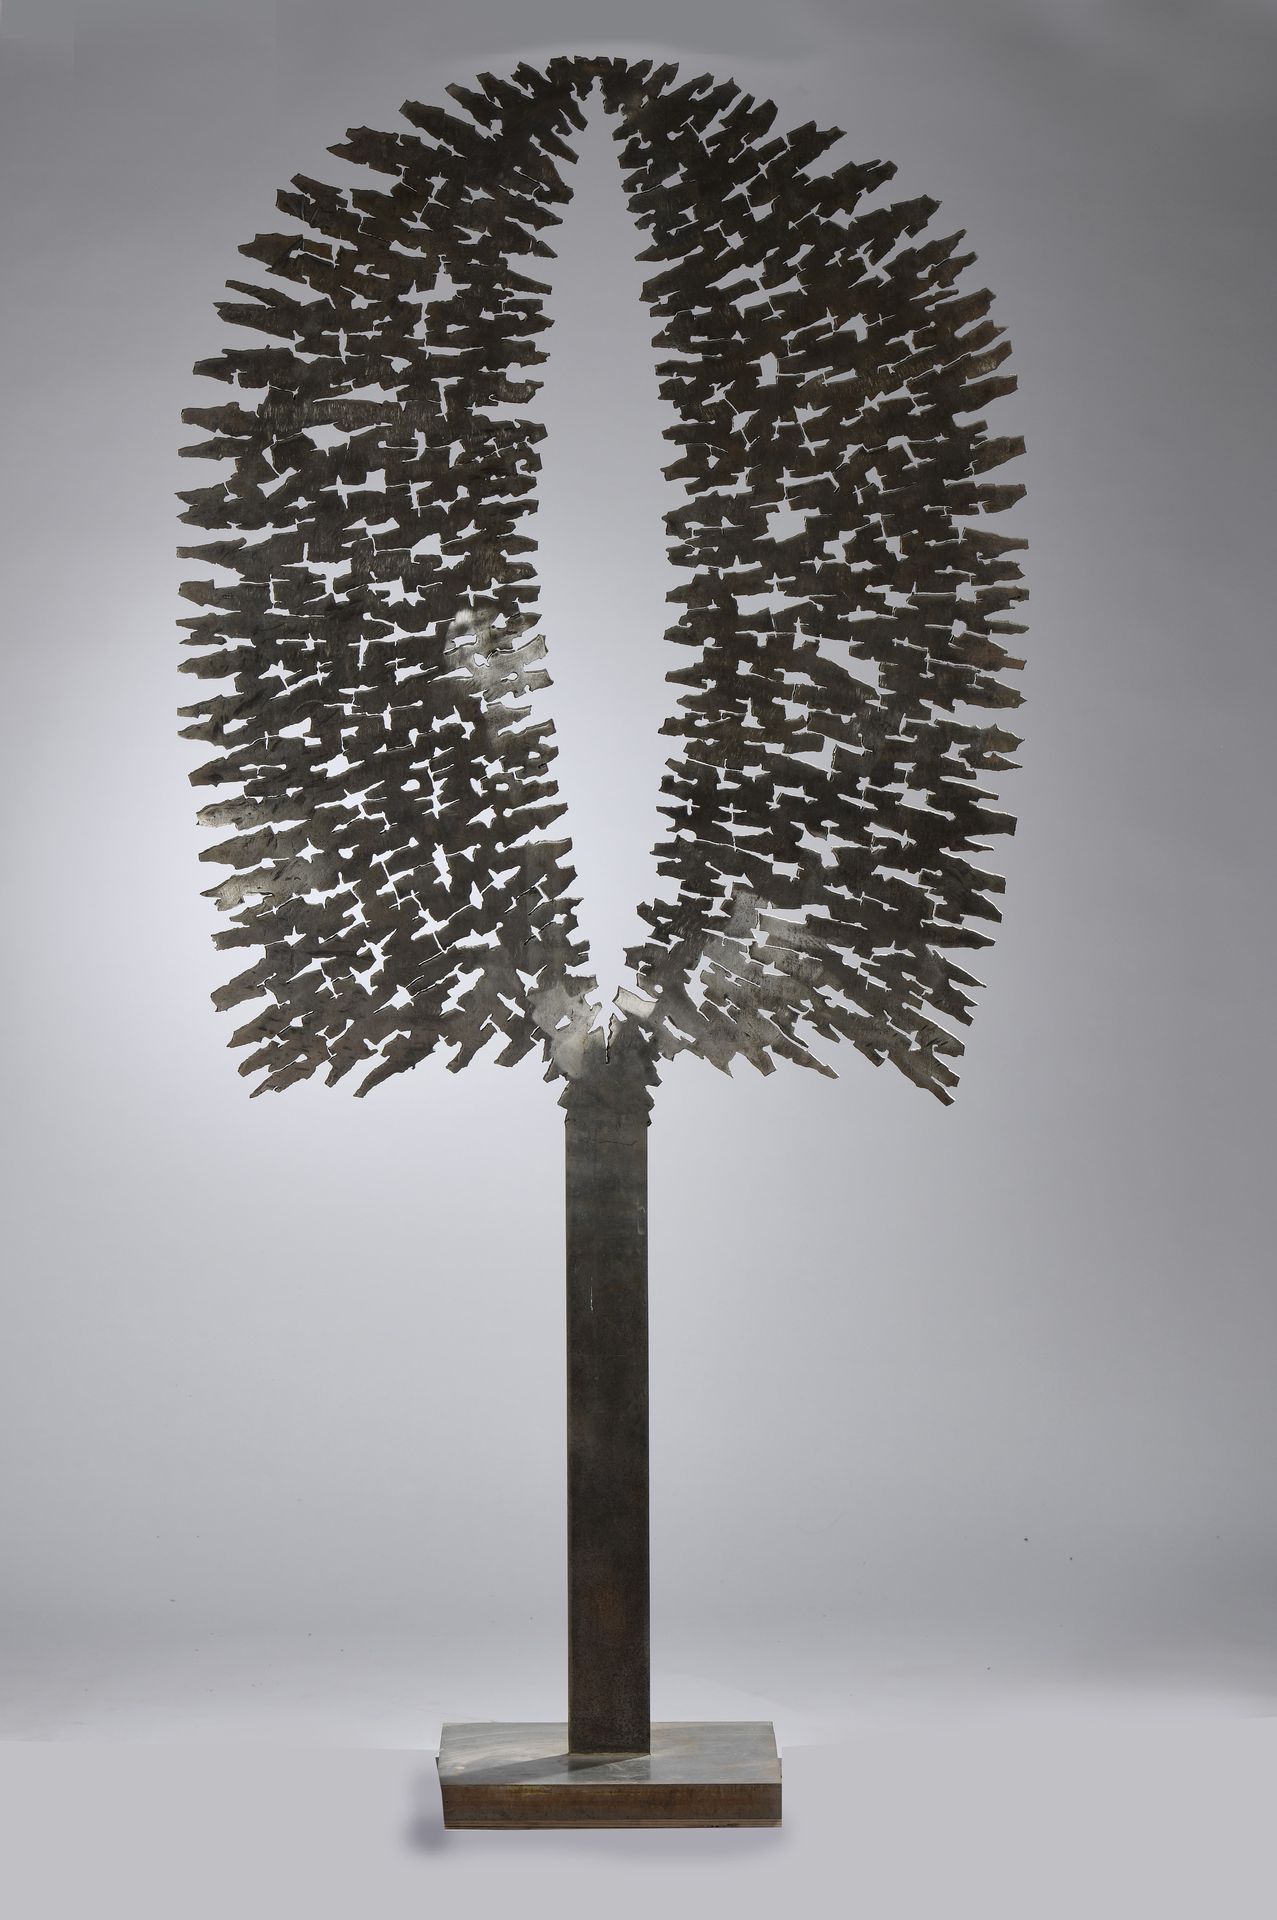 Null 米歇尔-里科（生于1946年）
生命之树 
切割和焊接钢的雕塑。
底座上有轻微的氧化现象。
206 x 101 x 33厘米